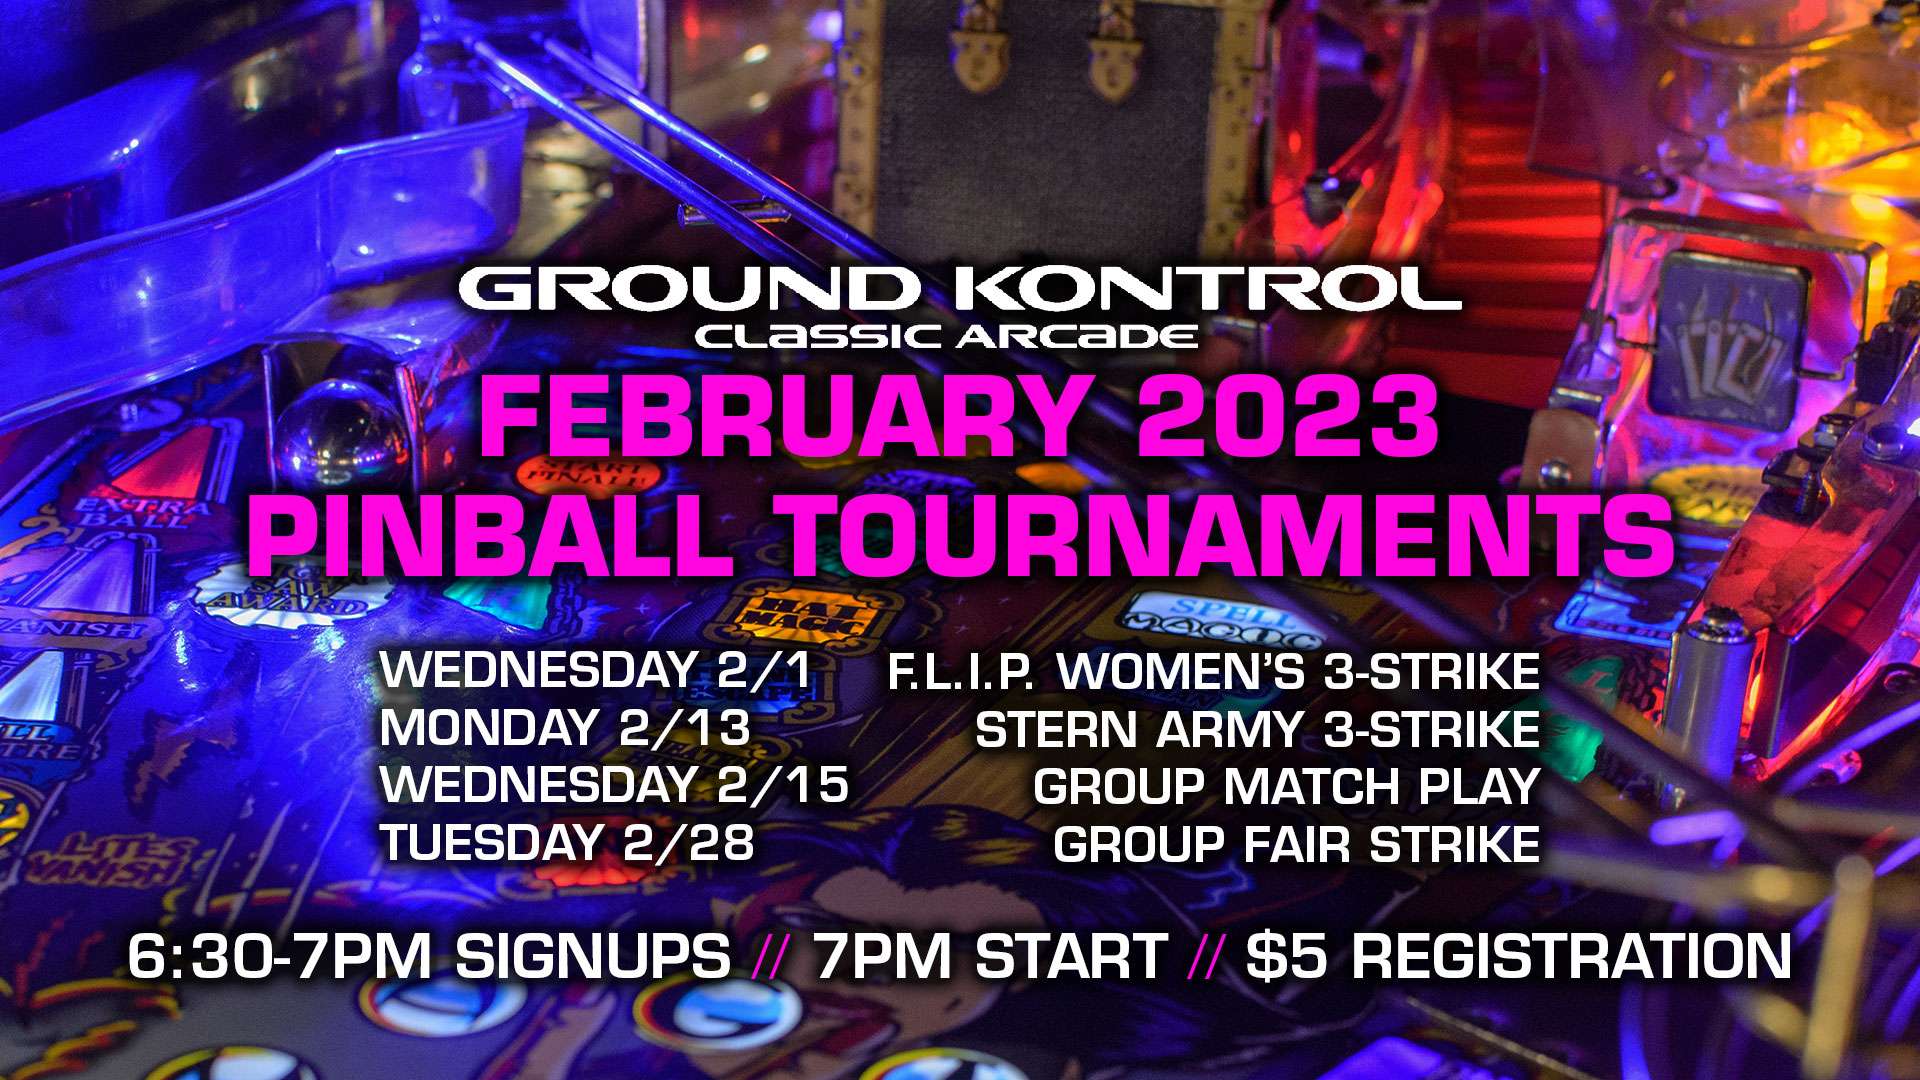 February 2023 Pinball Tournaments